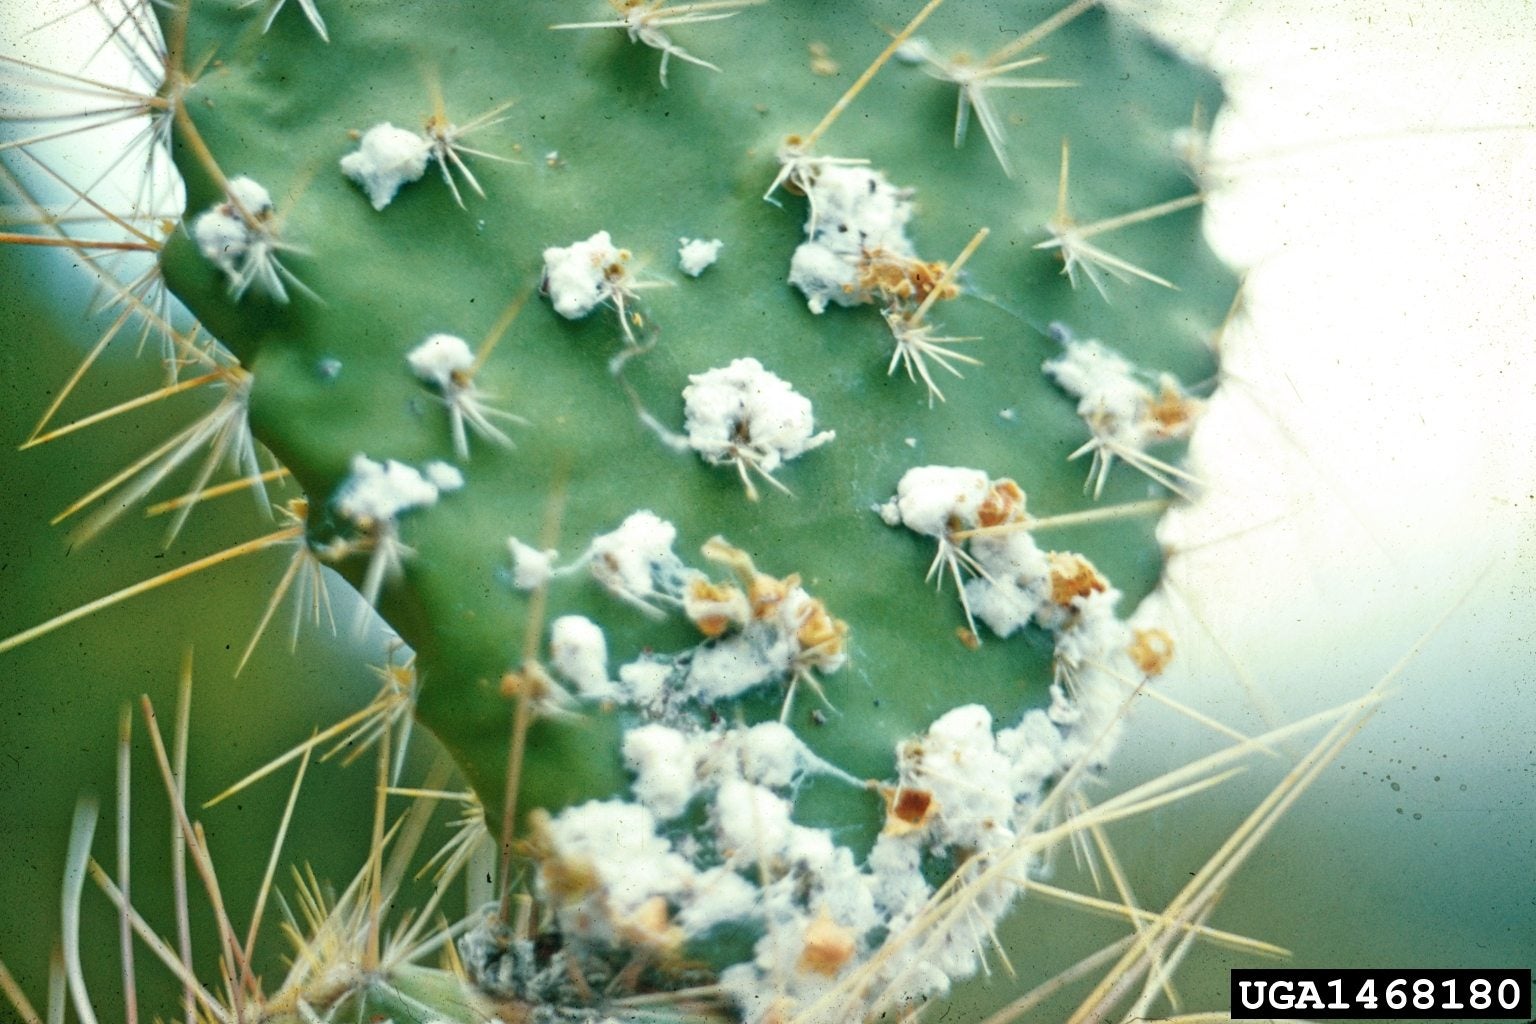 Cactus Gripper - Cactus Pruner